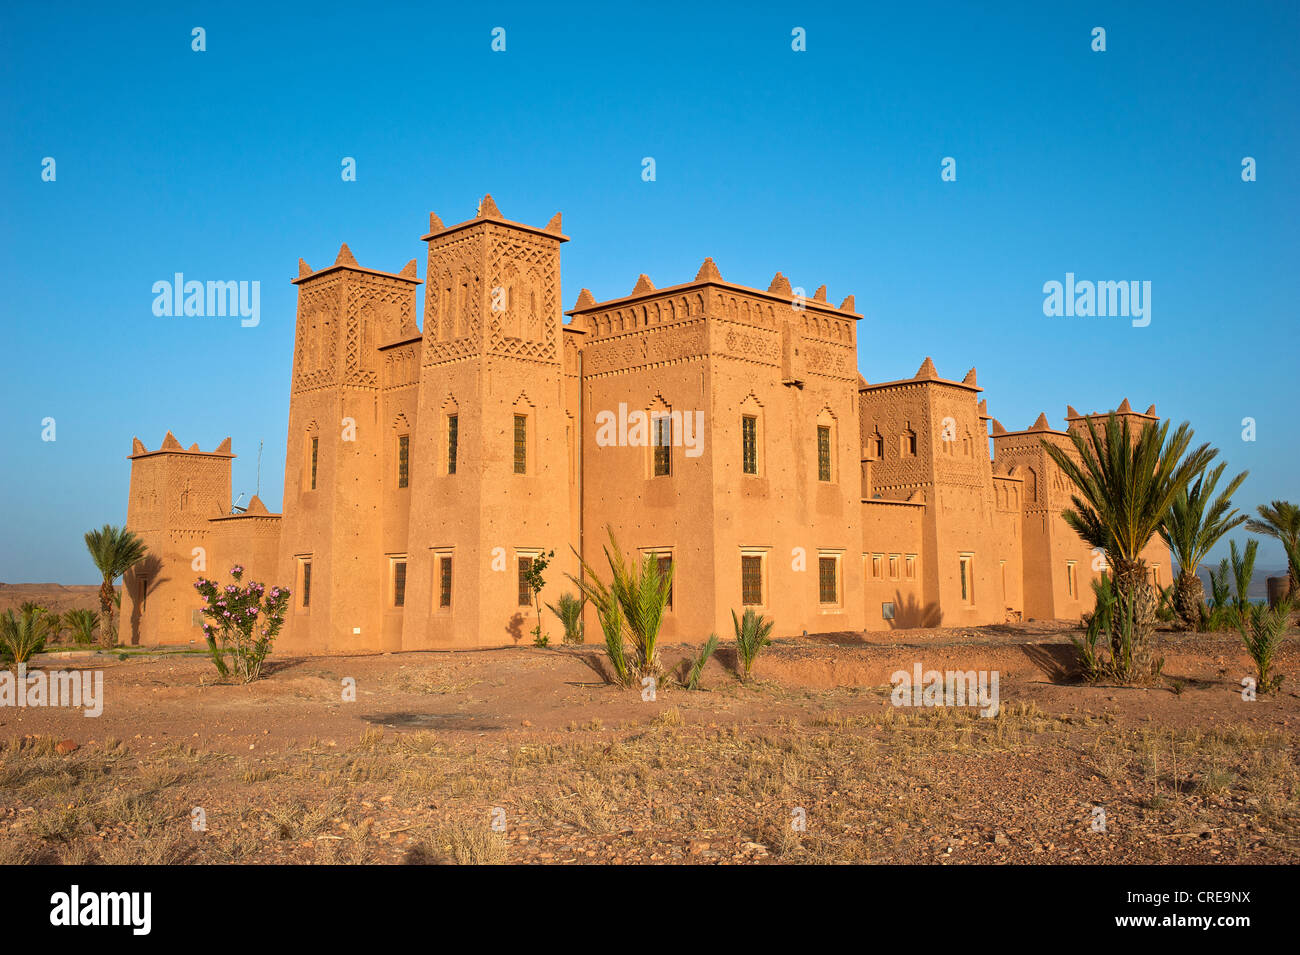 Appena eretto Kasbah, Tighremt o berbero castello residenziale realizzato da terra sbattuta, Ouarzazate, abbassare Dades Valley Foto Stock